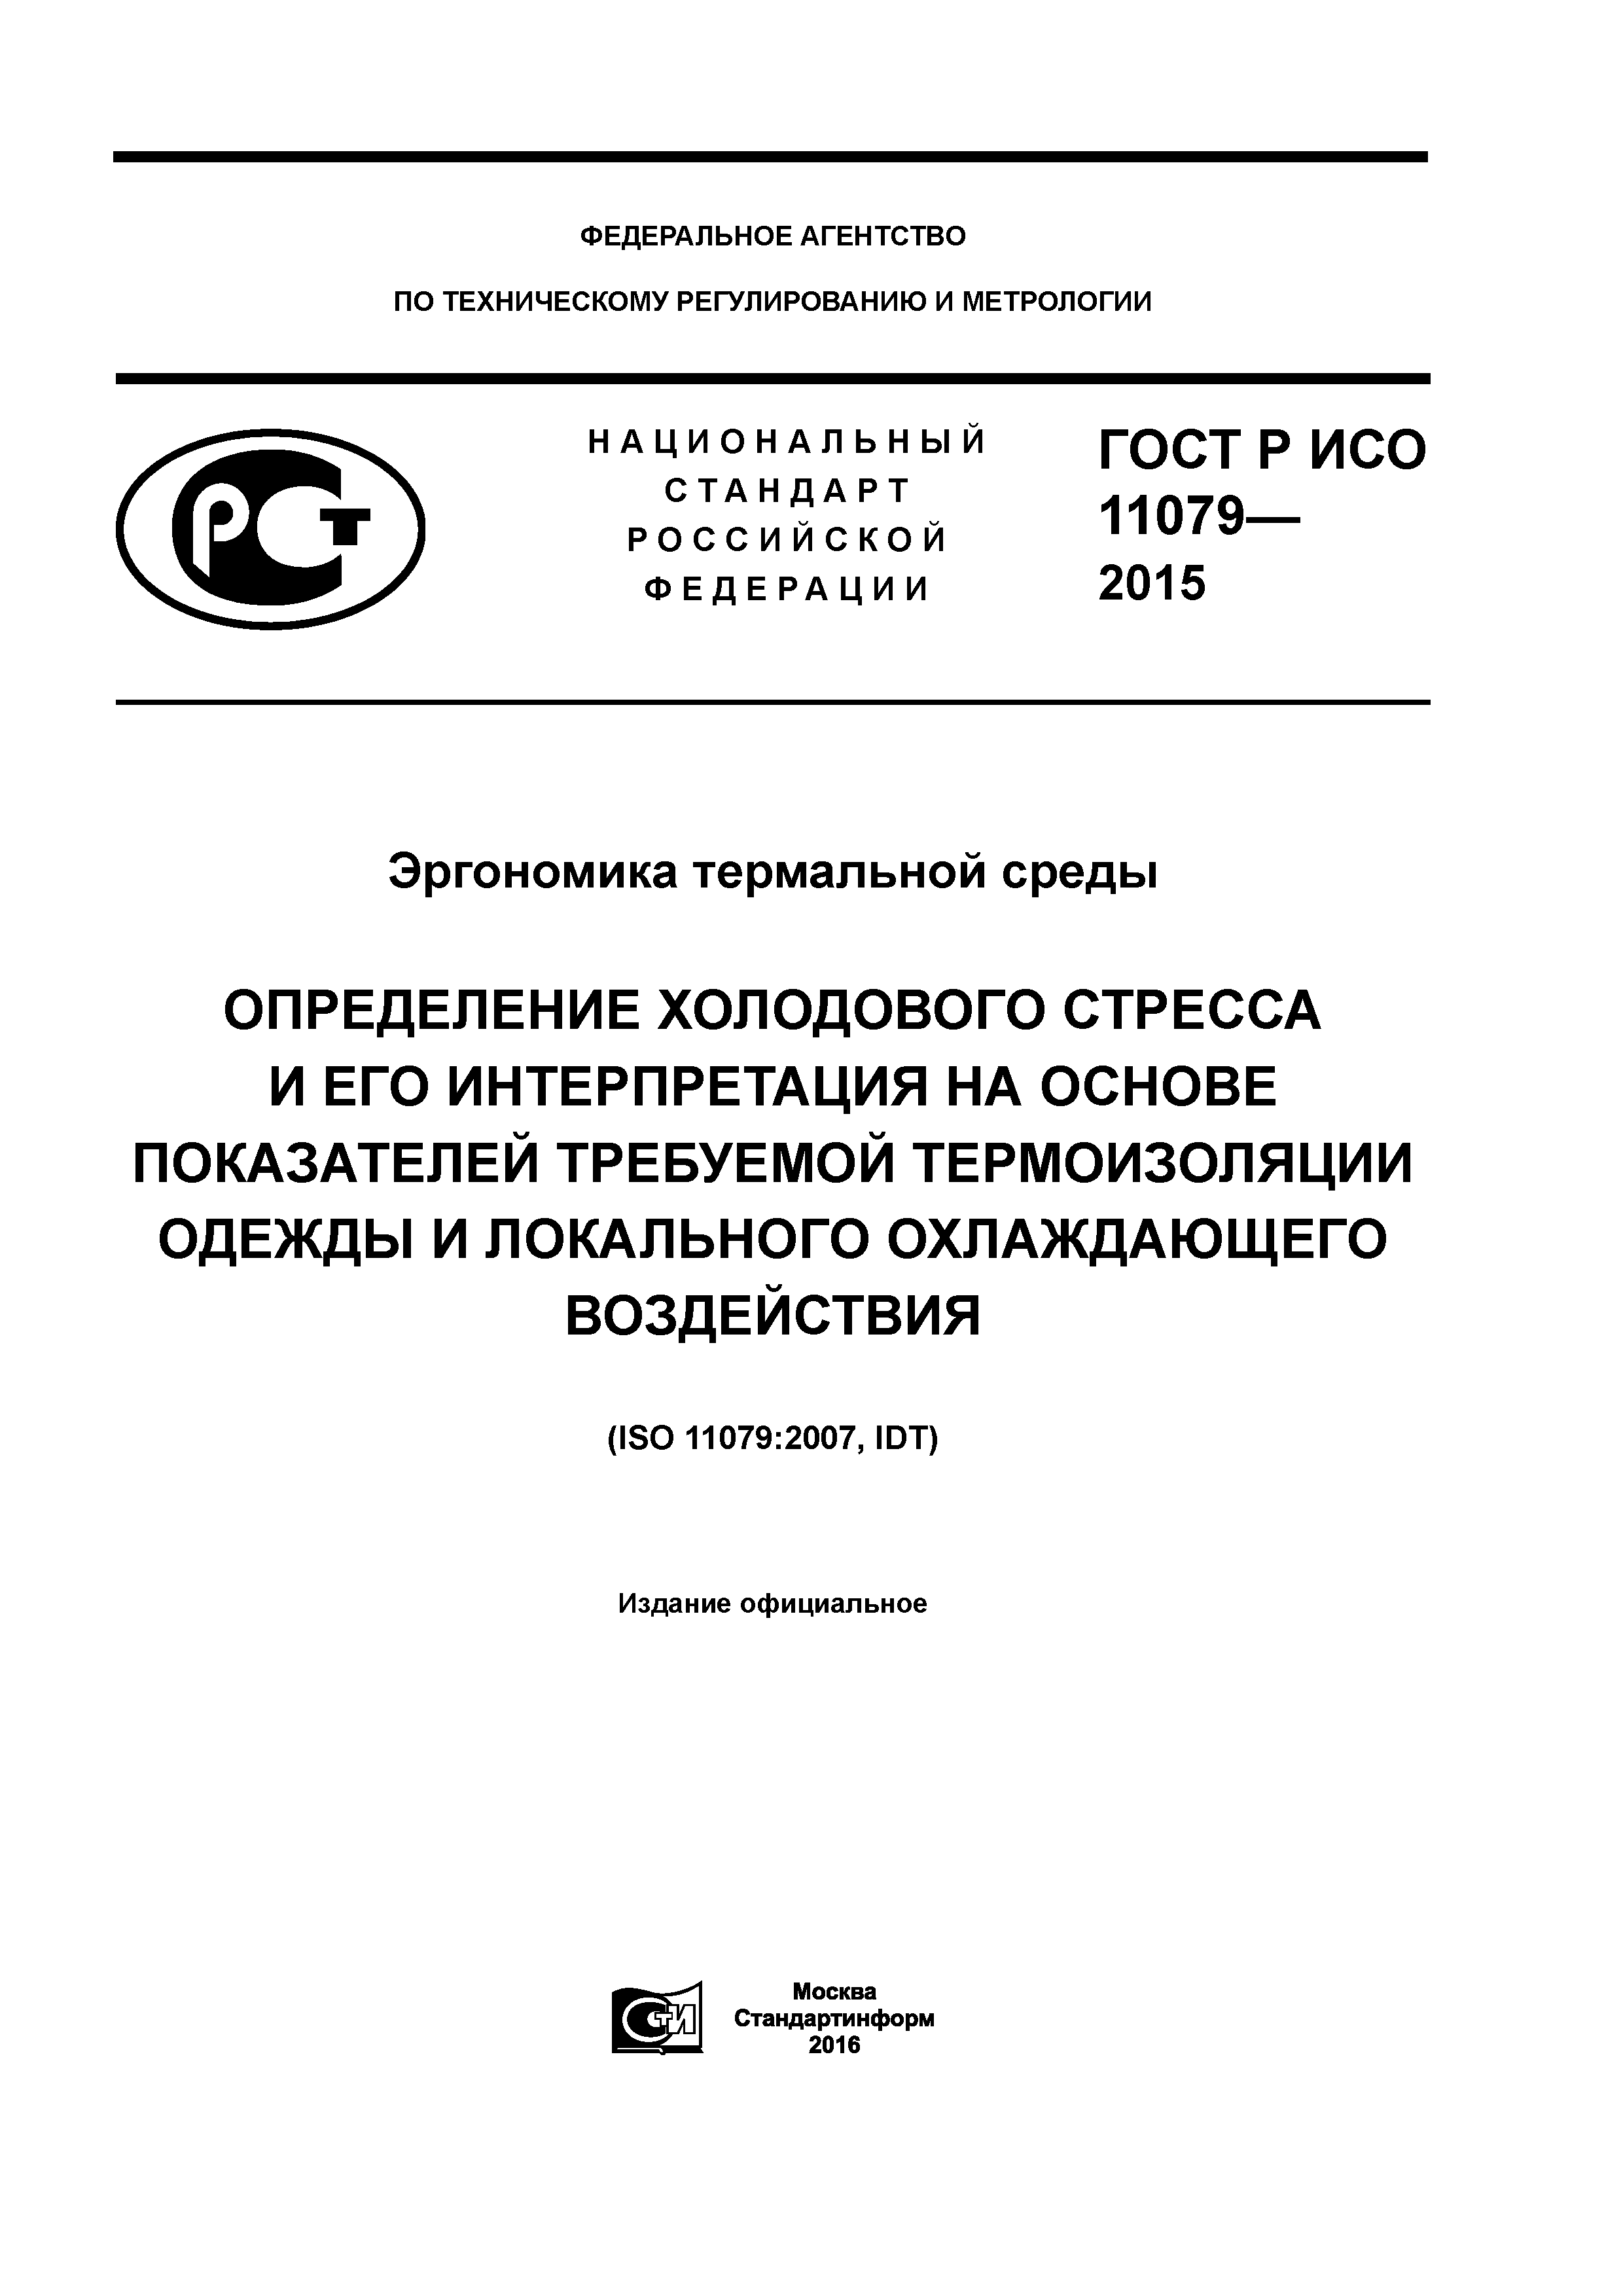 ГОСТ Р ИСО 11079-2015